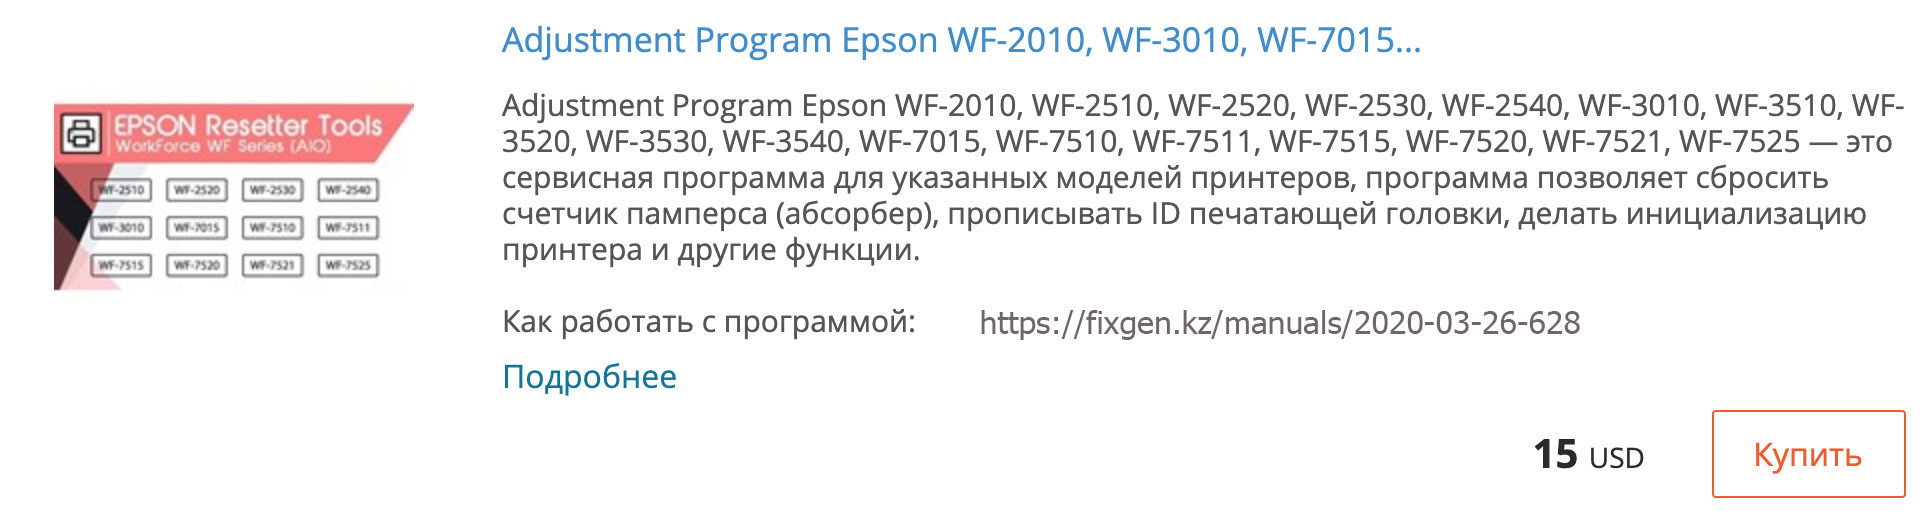 Купить Adjustment program Epson WF-2010, WF-2510, WF-2520, WF-2530, WF-2540, WF-3010, WF-3510, WF-3520, WF-3530, WF-3540, WF-7015, WF-7510, WF-7511, WF-7515, WF-7520, WF-7521, WF-7525